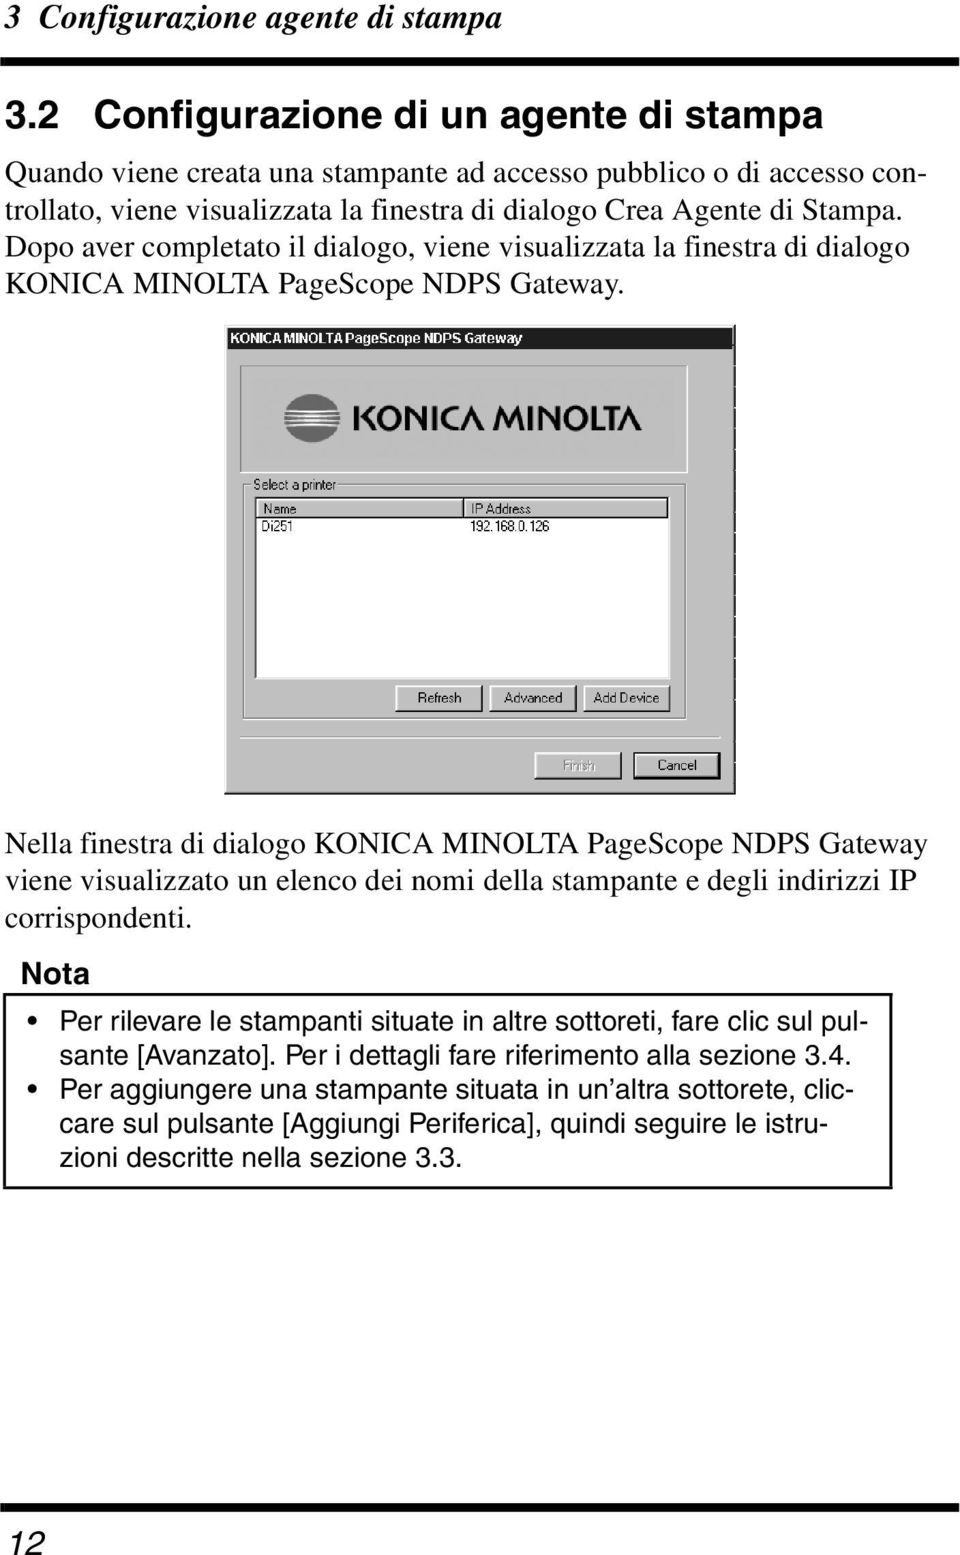 Dopo aver completato il dialogo, viene visualizzata la finestra di dialogo KONICA MINOLTA PageScope NDPS Gateway.